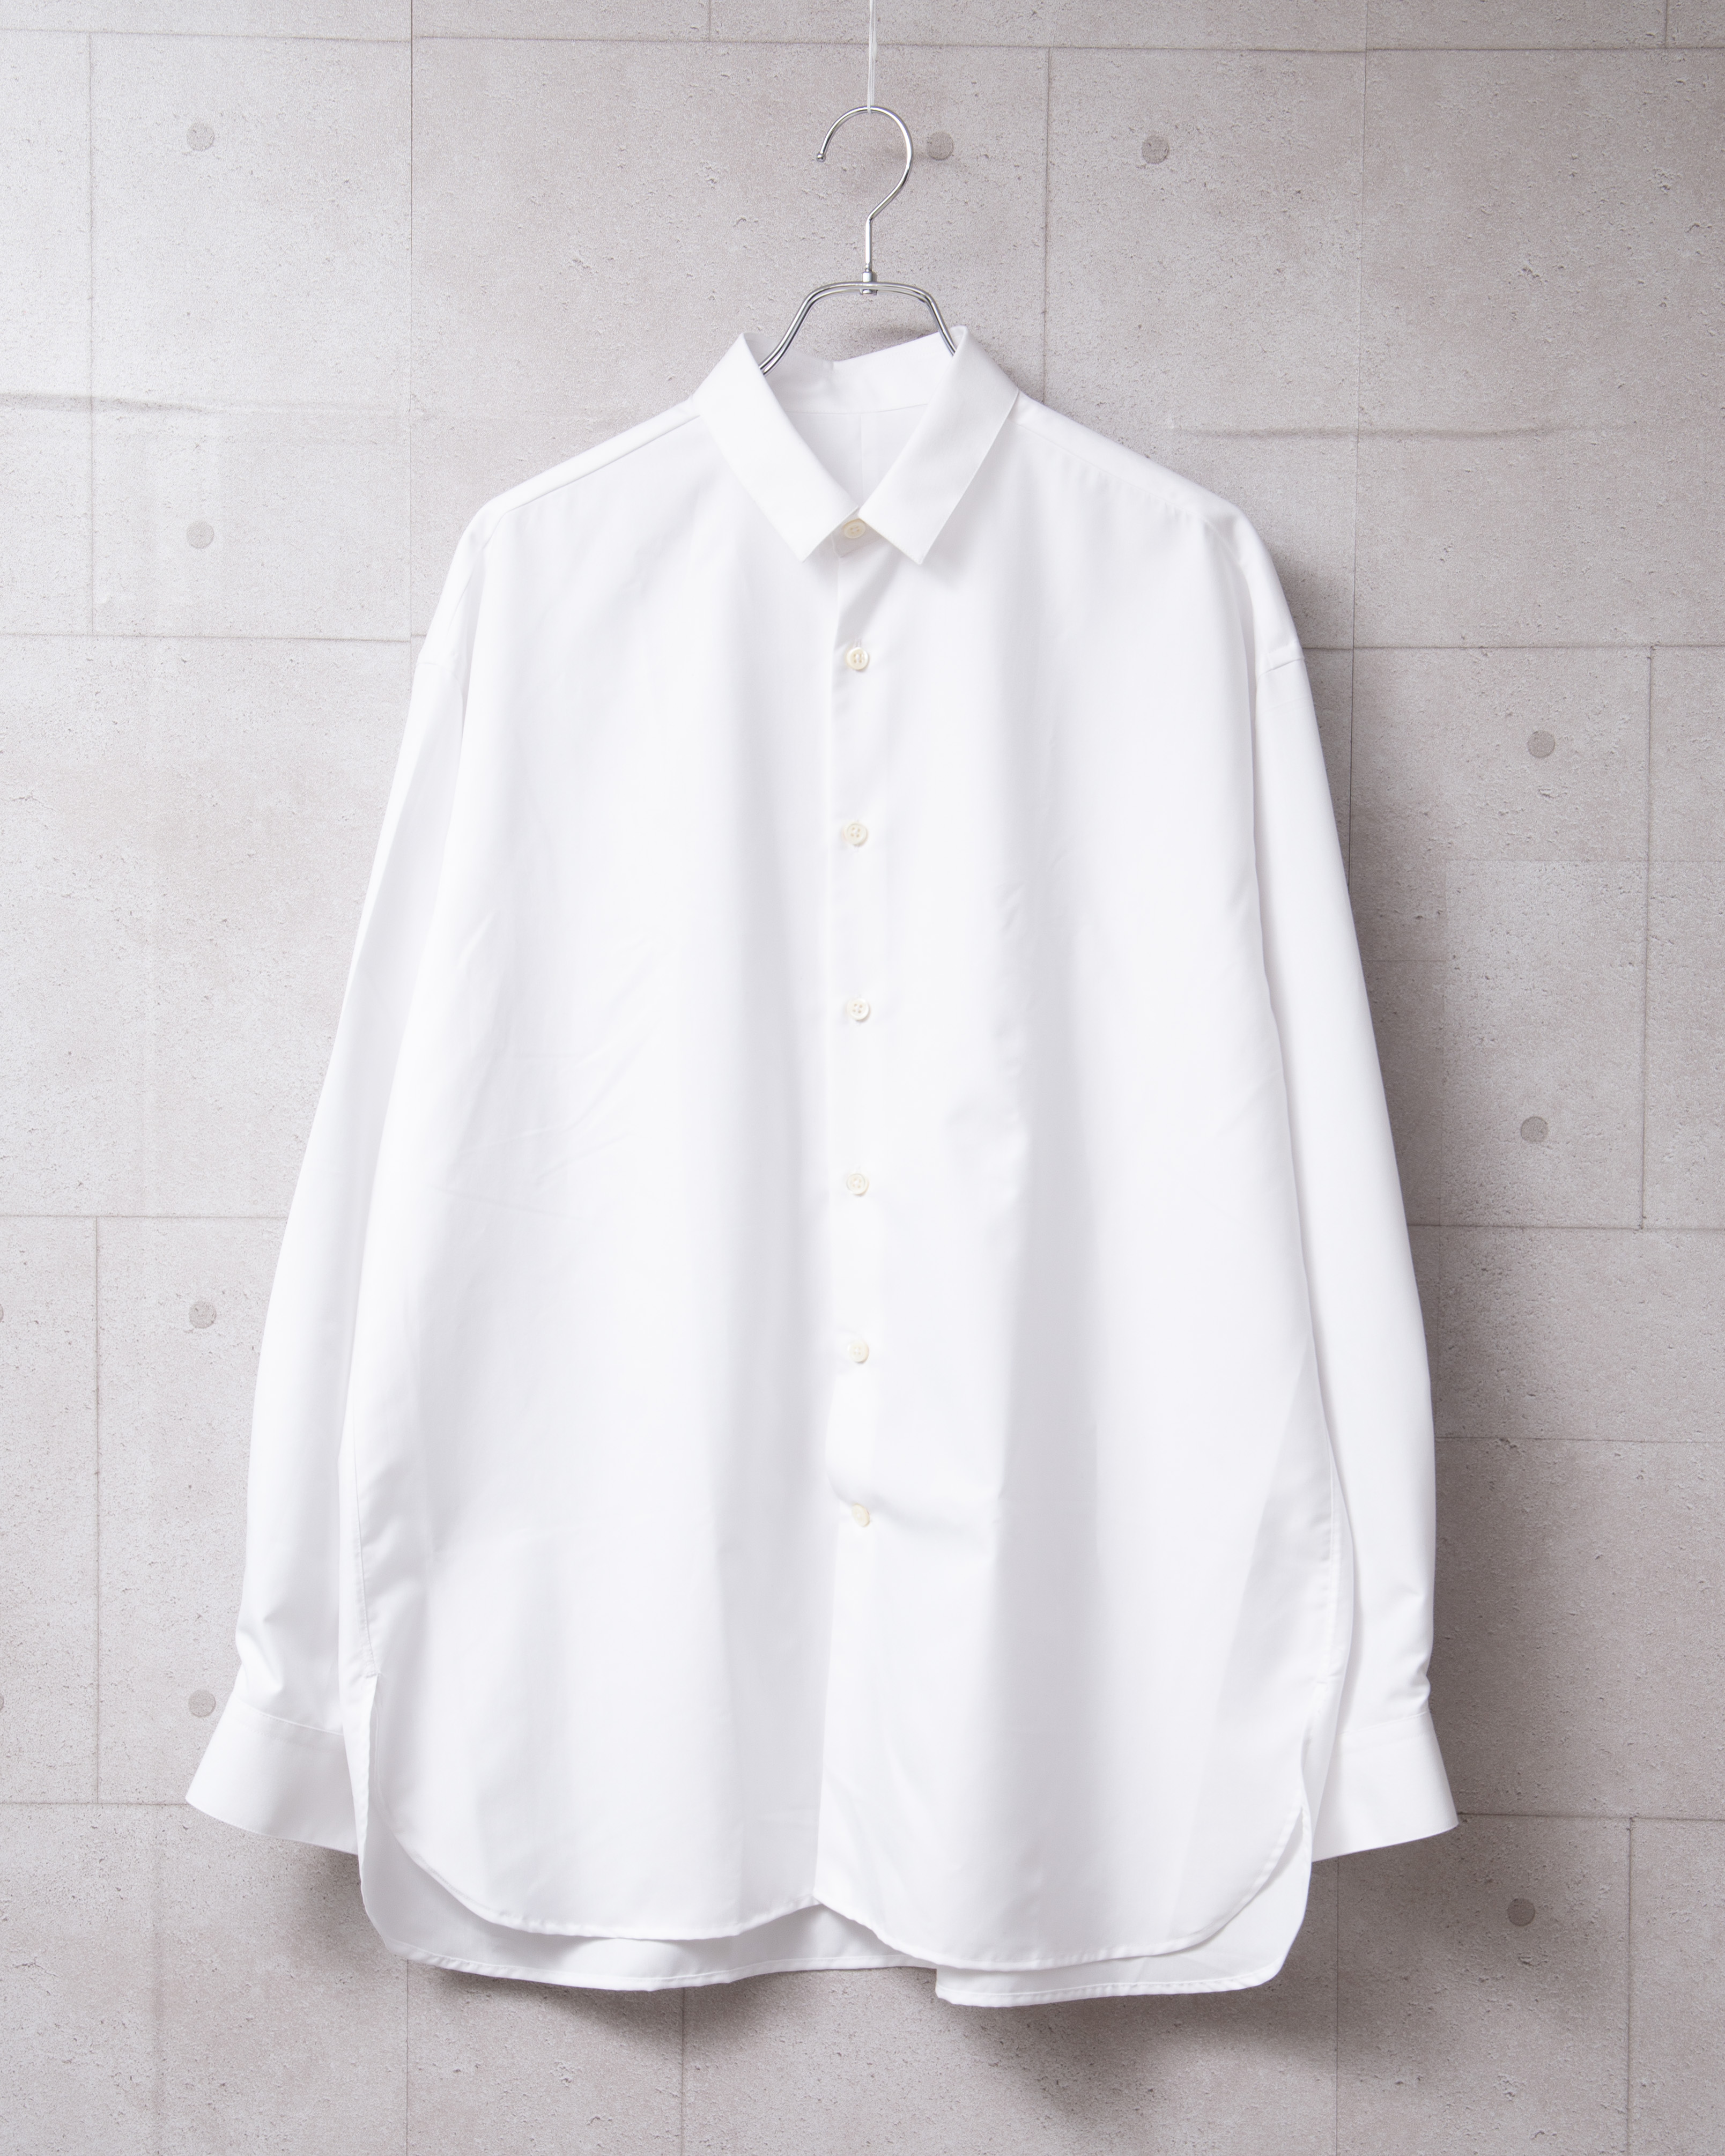 服ログ2019春夏「究極の白シャツをつくろう『KEI×MB×Re:』の新デザイン 